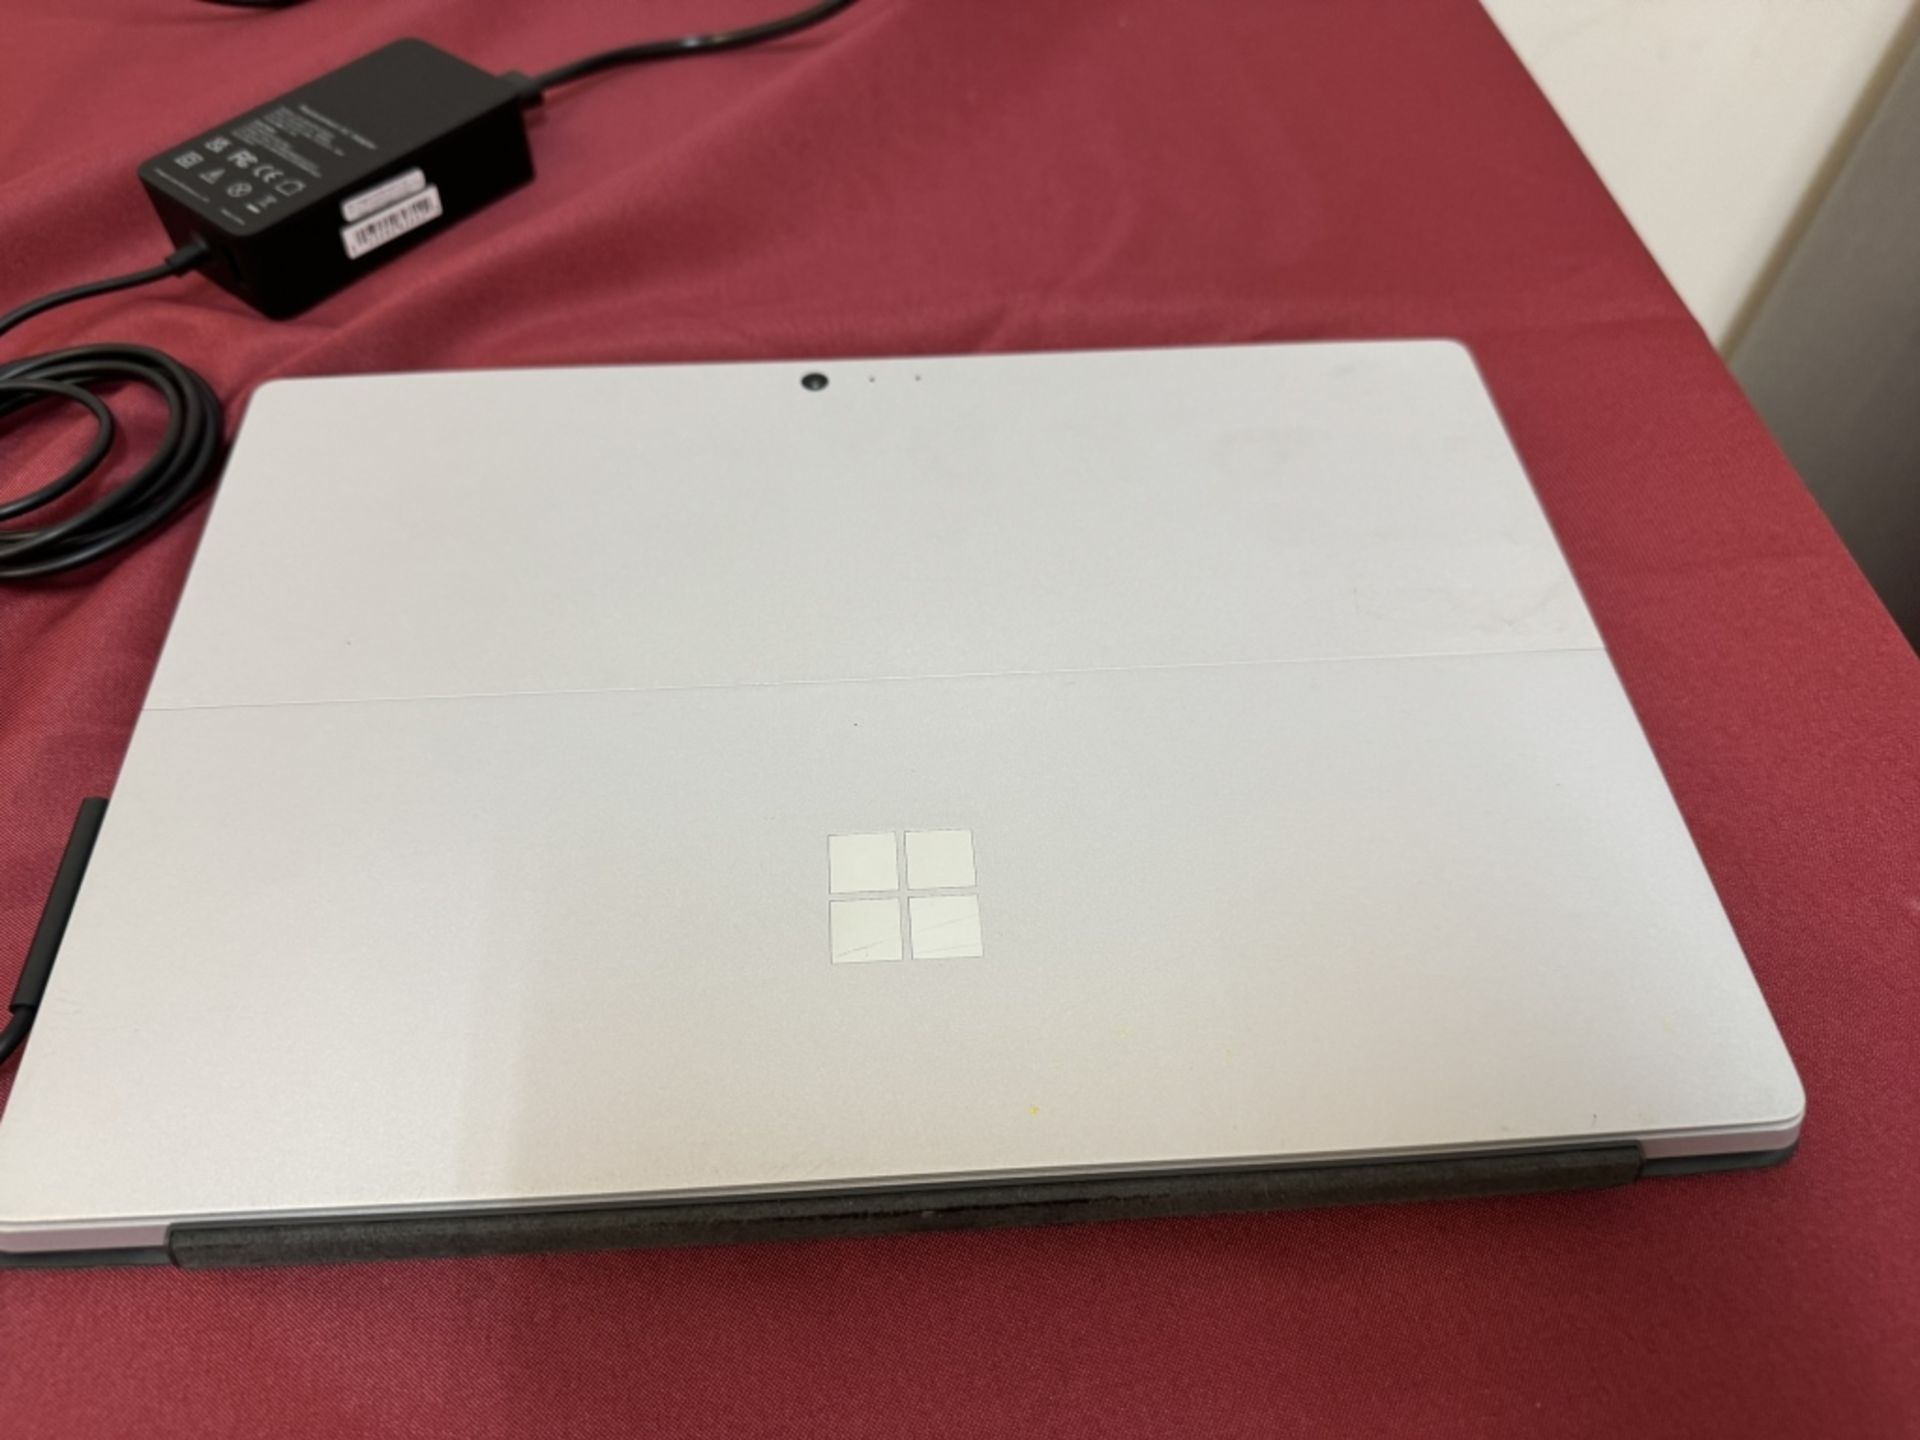 Microsoft Surface Pro 4 Corei7 8GB RAM 256GB SSD - Image 7 of 8